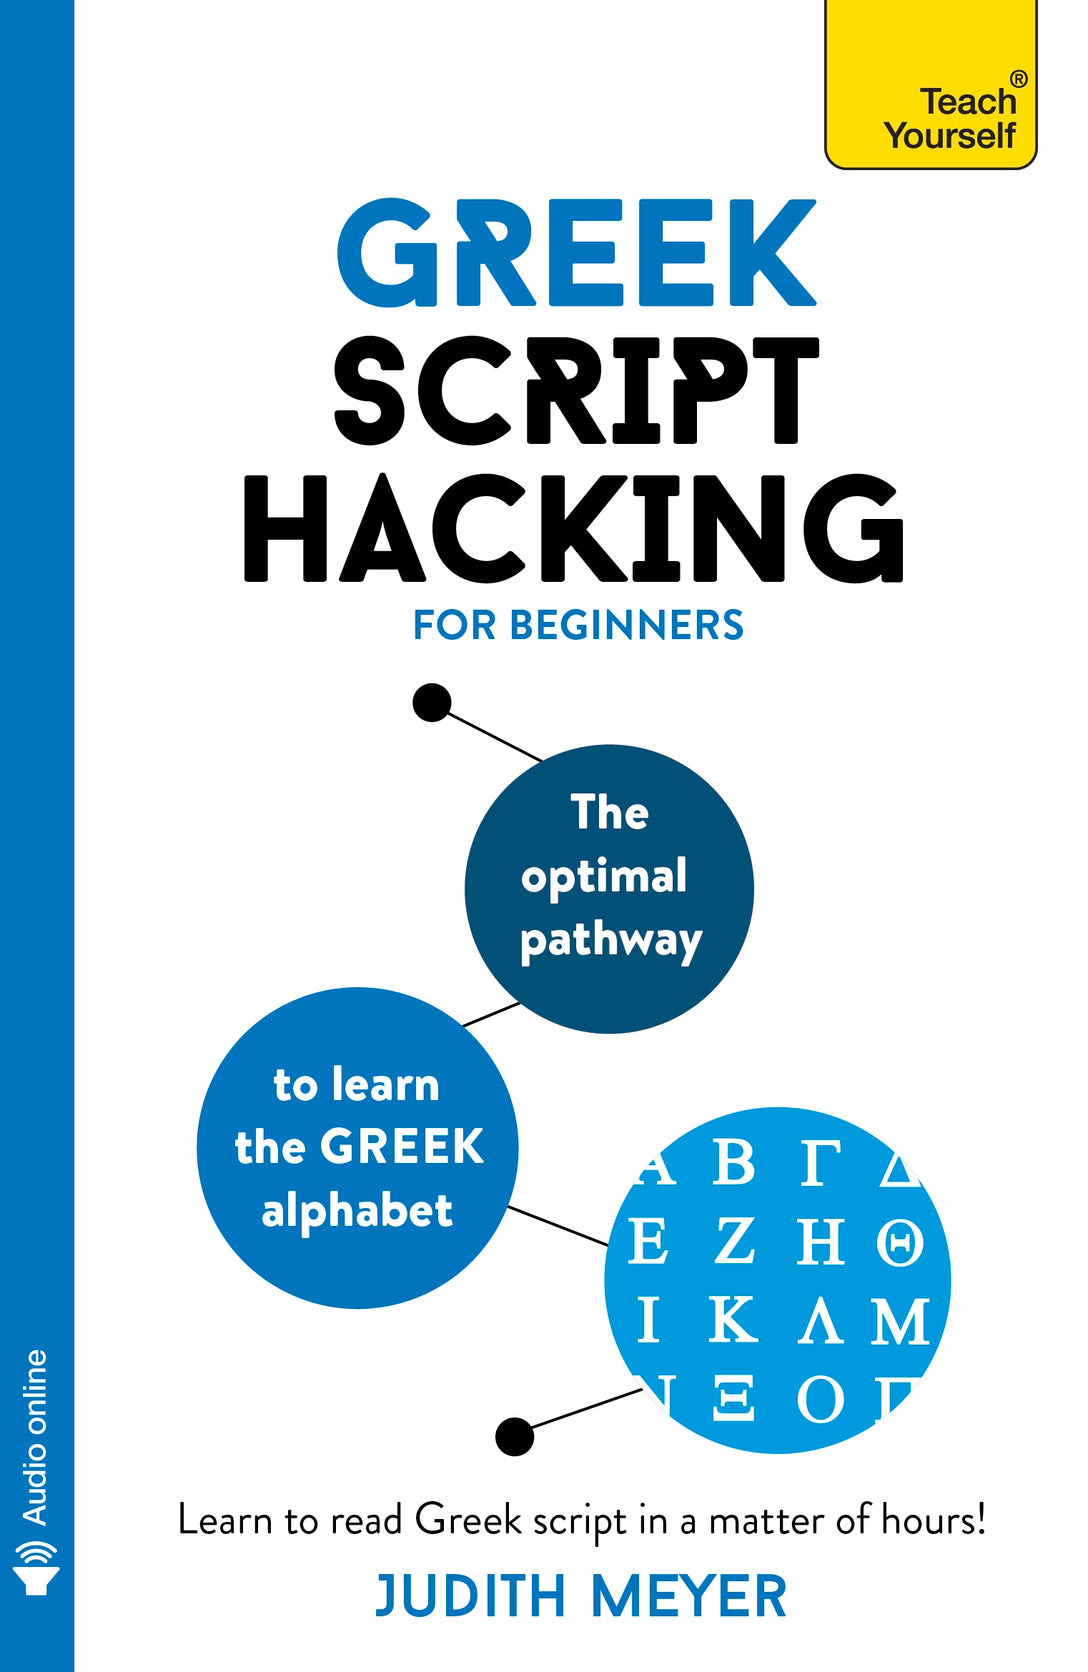 Greek Script Hacking by Judith Meyer